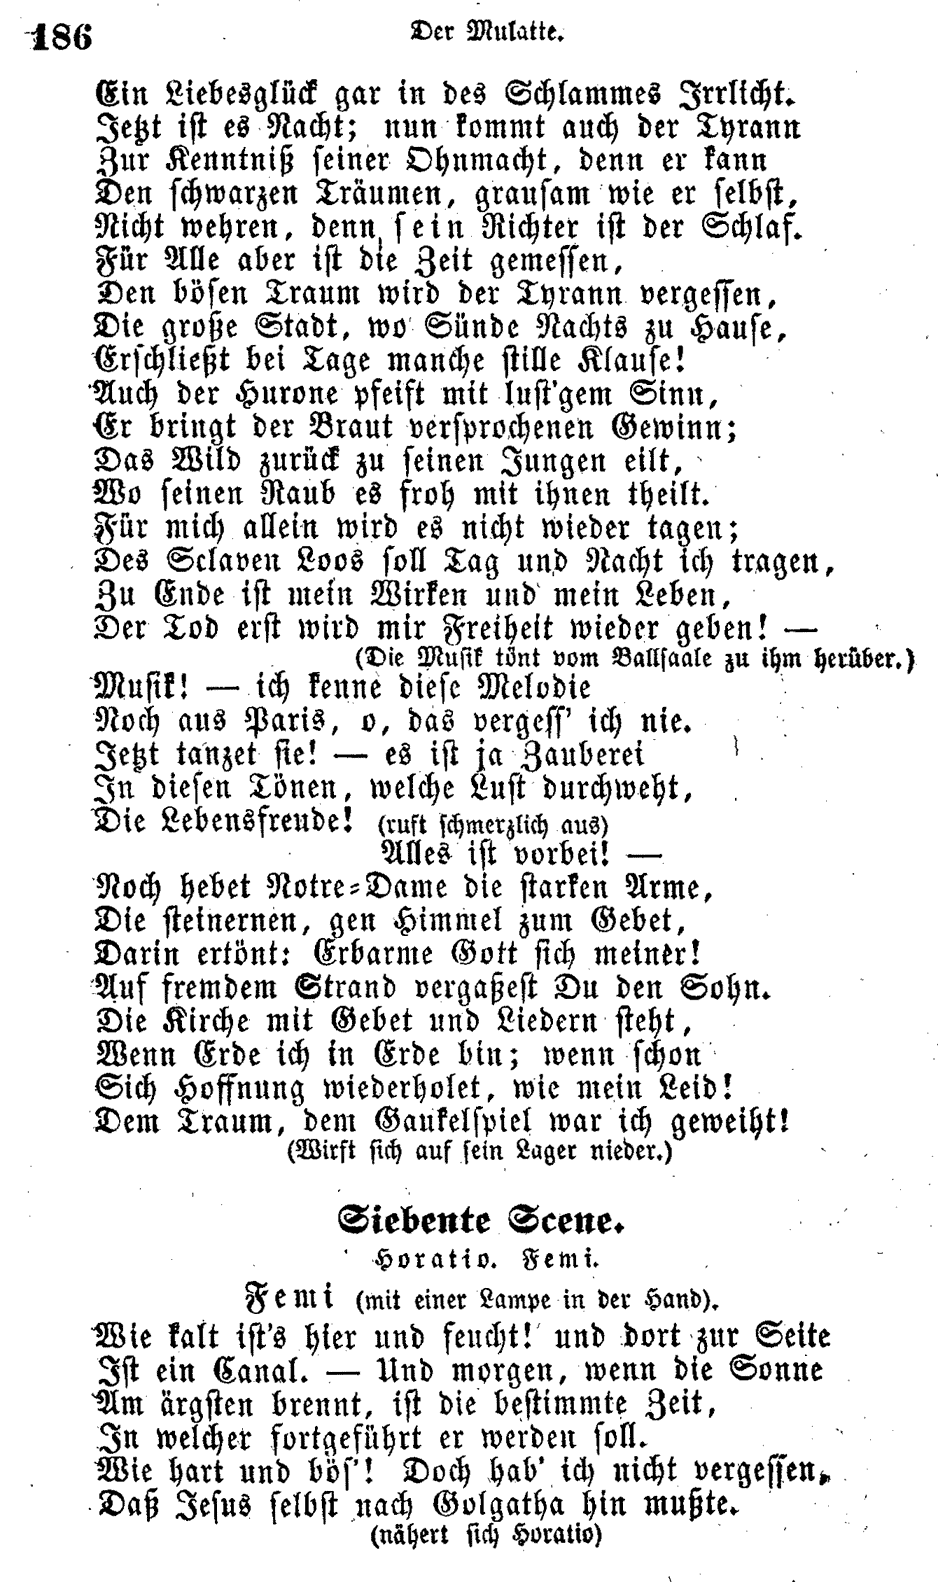 H.C. Andersen: Der Mulatte page  186